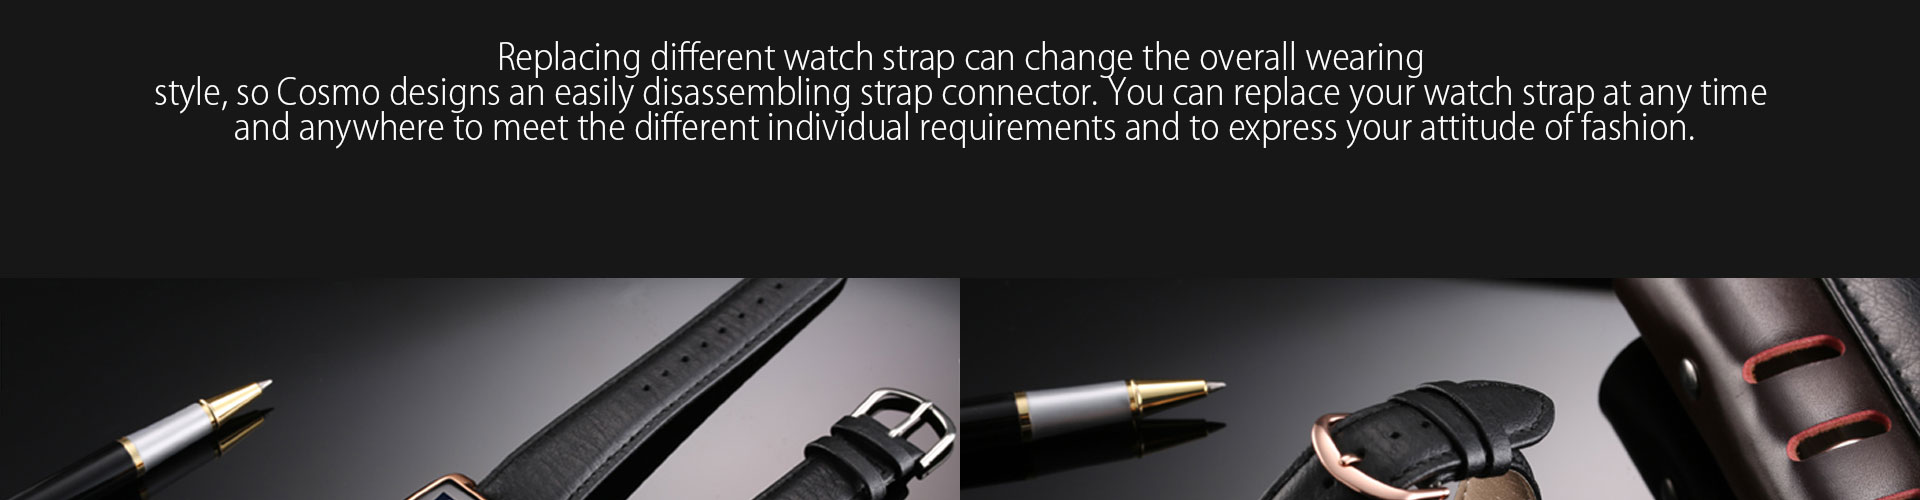 Zeblaze COSMO 1.61-inch 256*320px Smart Watch